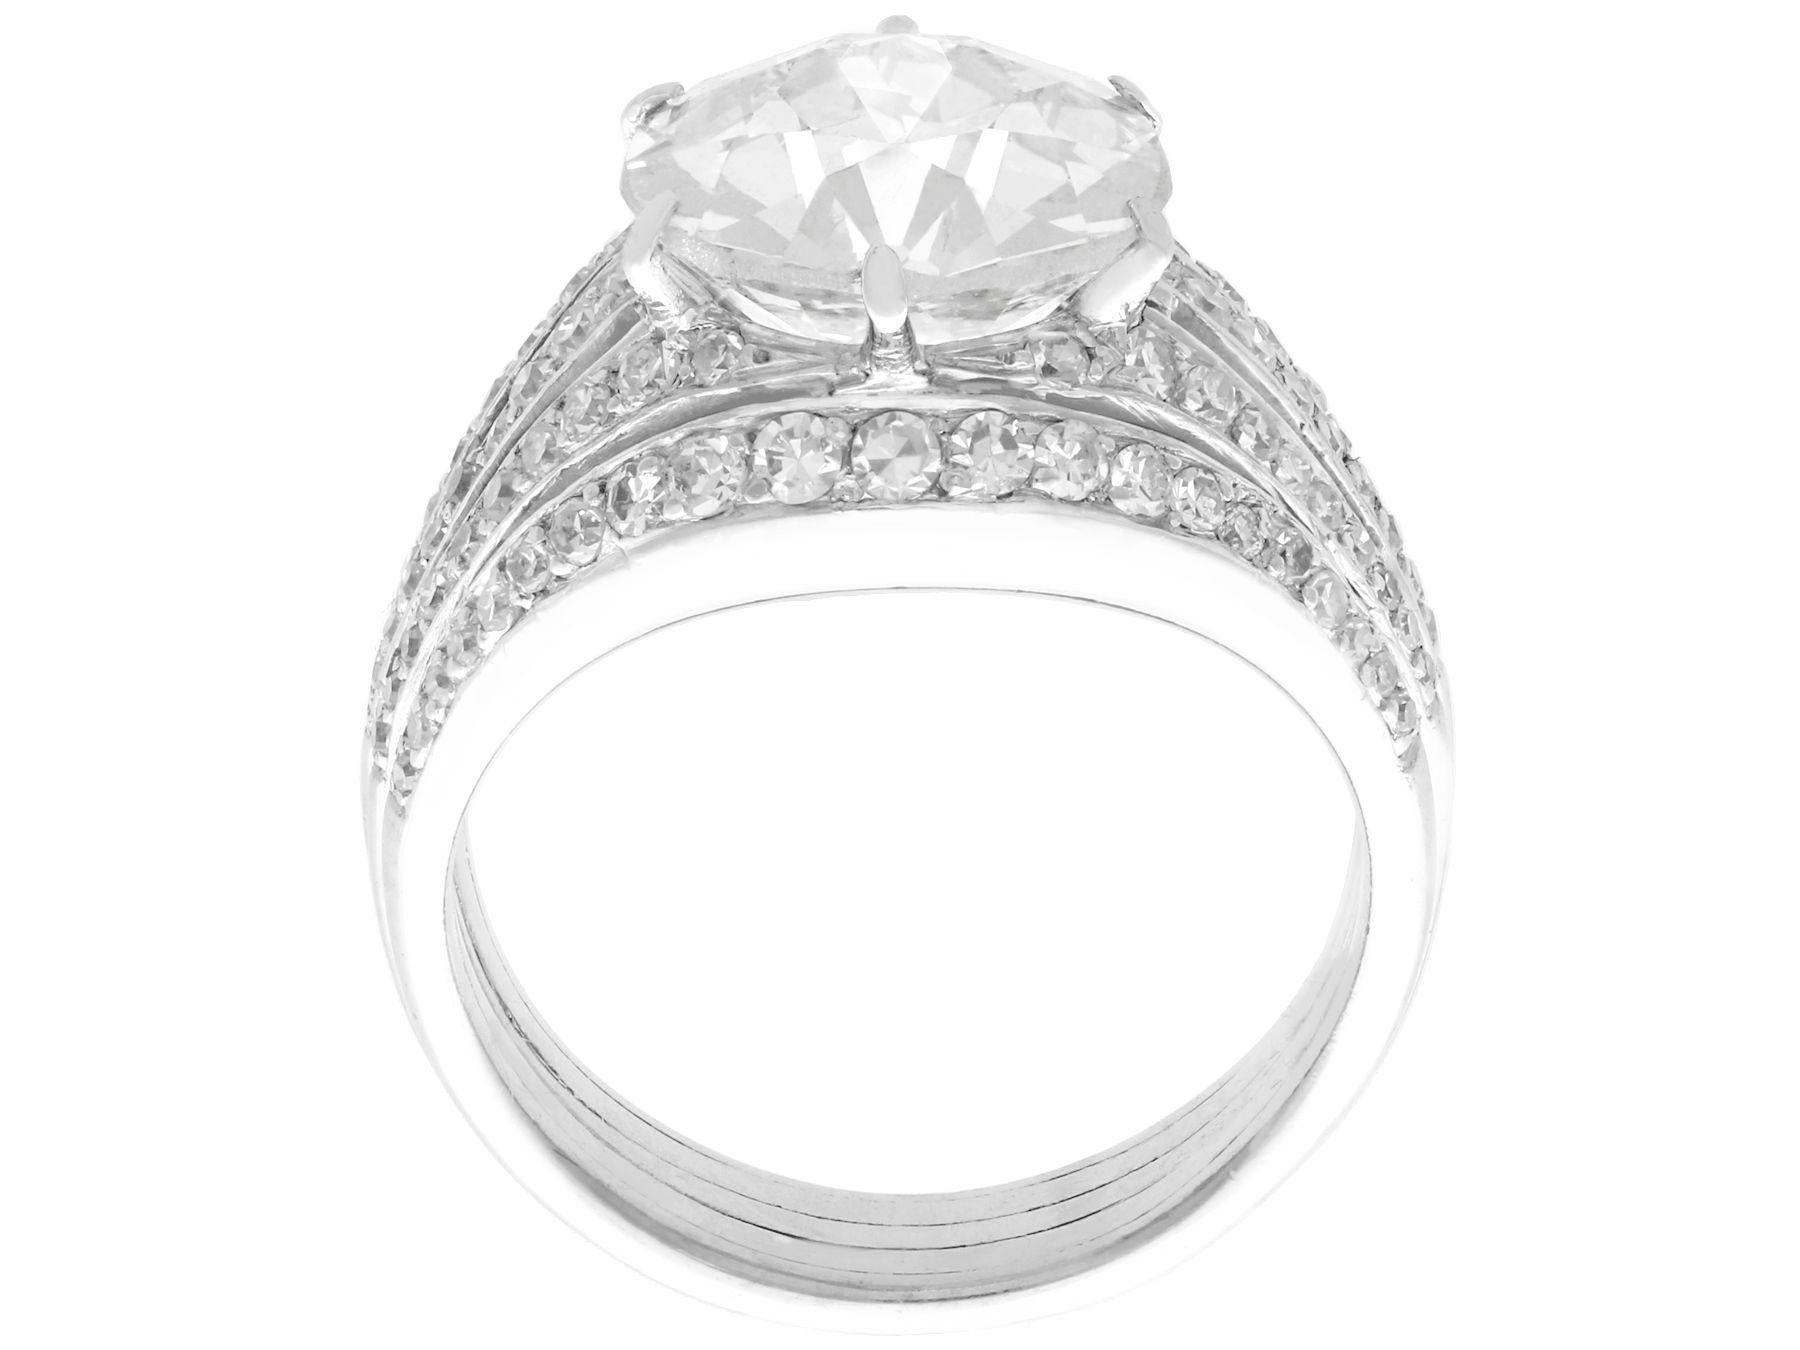 Women's Antique Art Deco 3.98 Carat Diamond and Platinum Cocktail Ring